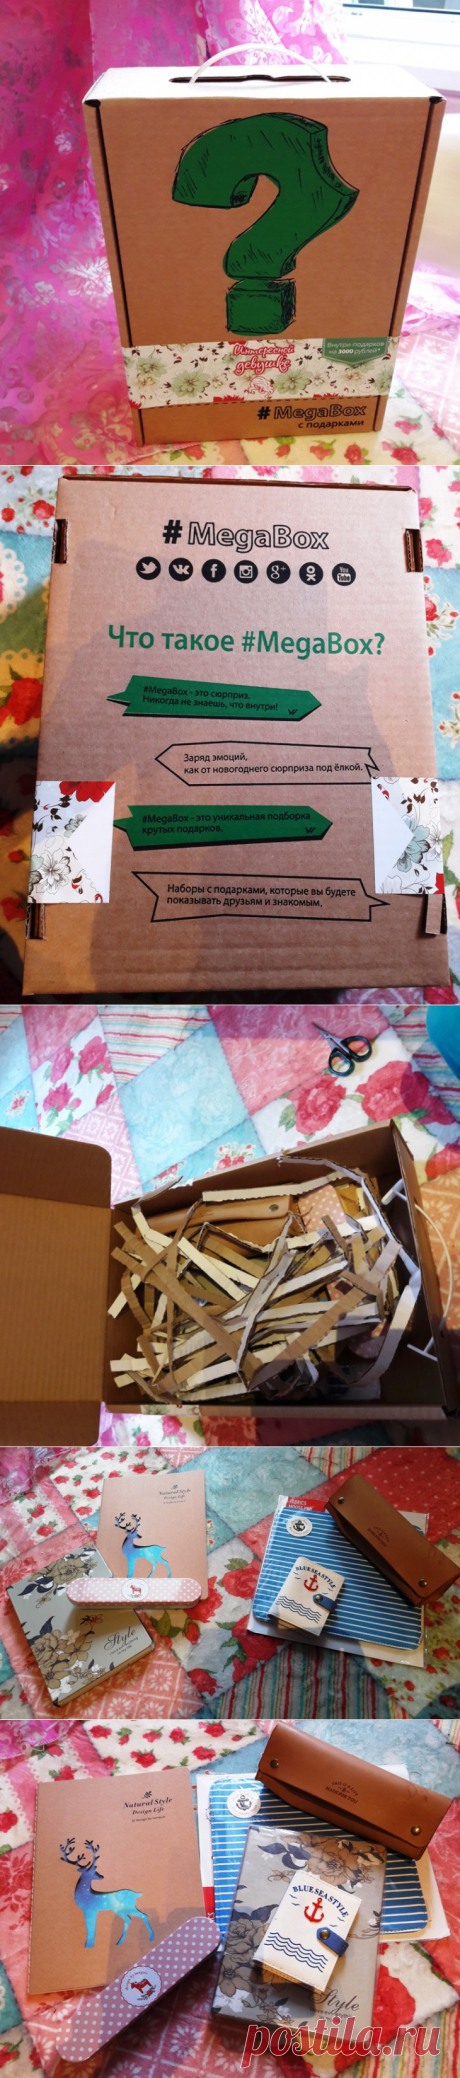 MegaBox : подарки - сюрпризы в коробке / Покупки через интернет / ВТОРАЯ УЛИЦА